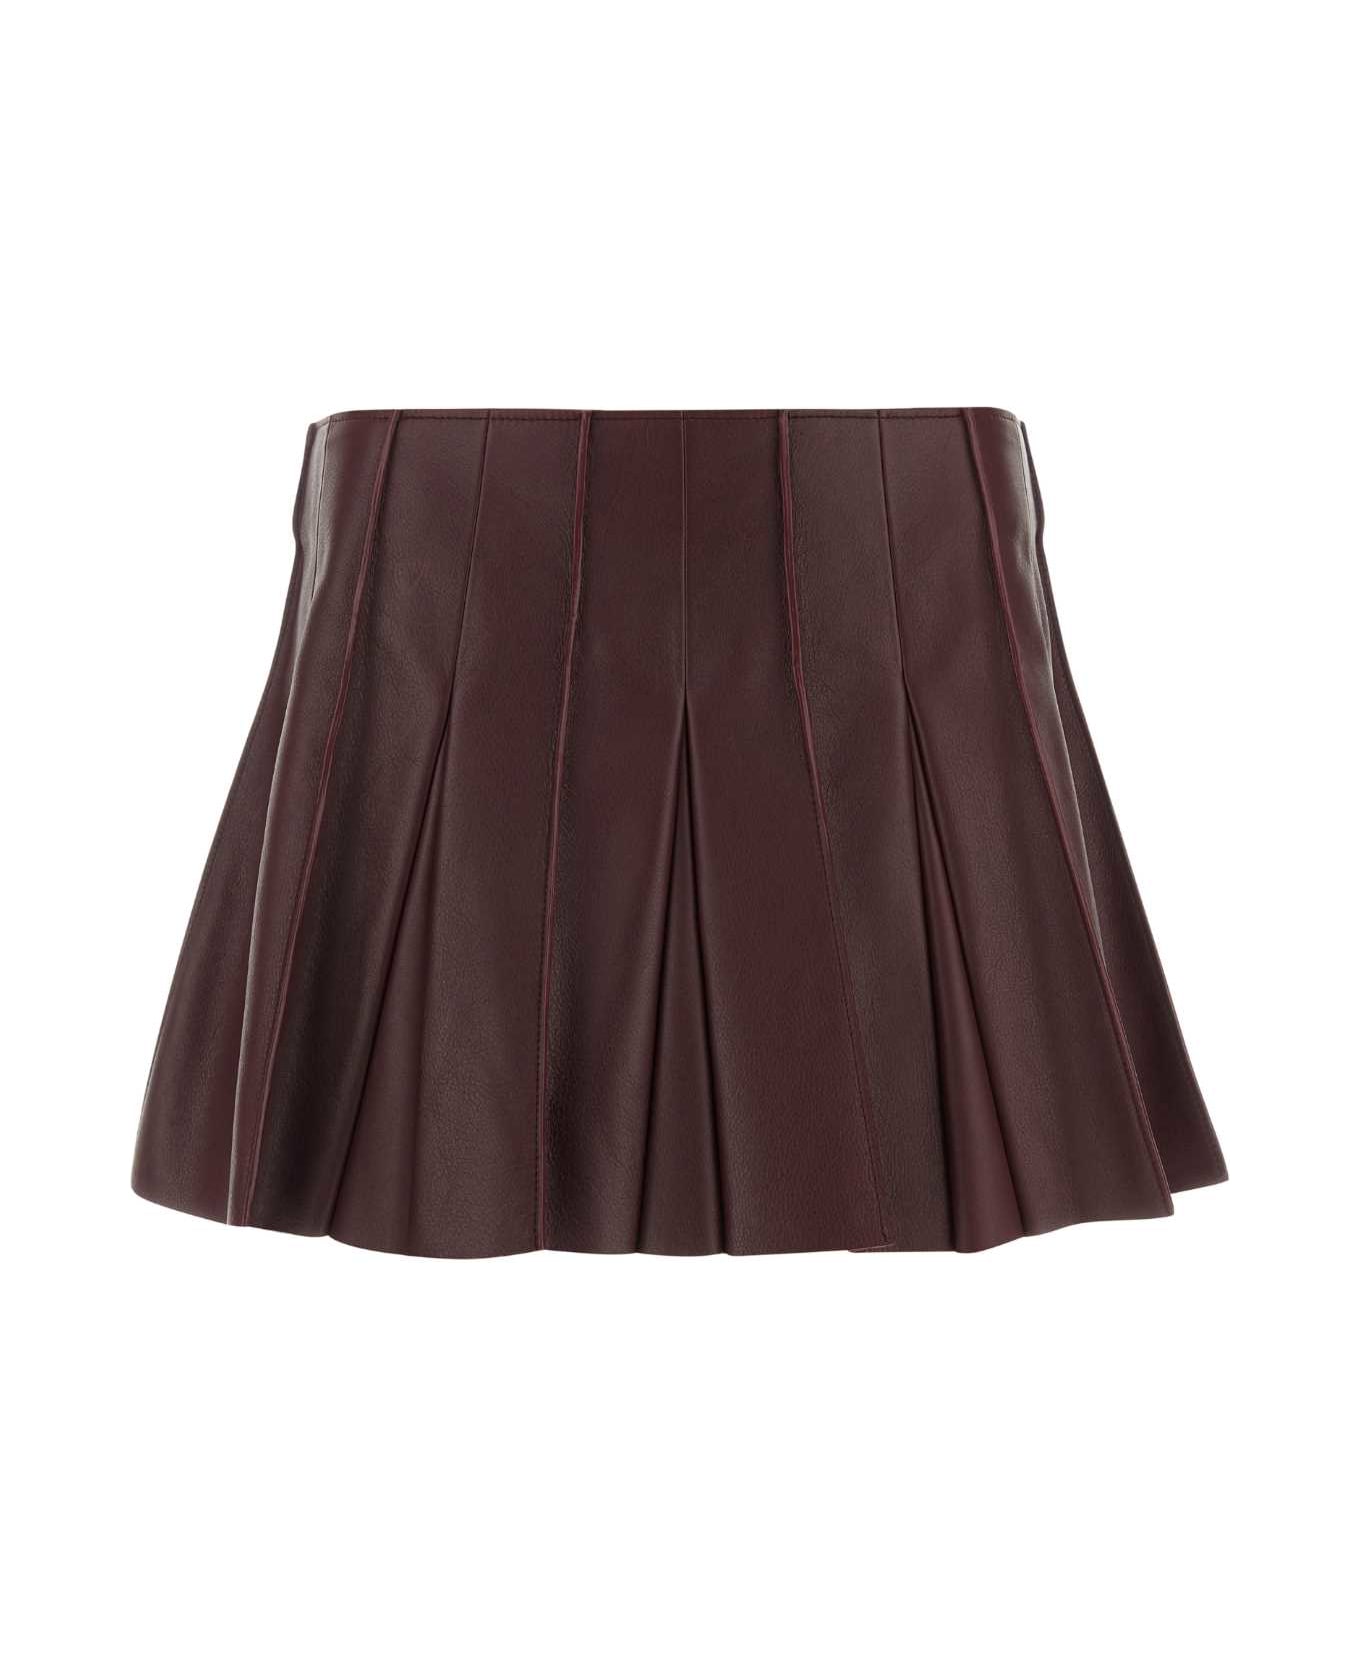 Bottega Veneta Burgundy Leather Mini Skirt - MERLOT